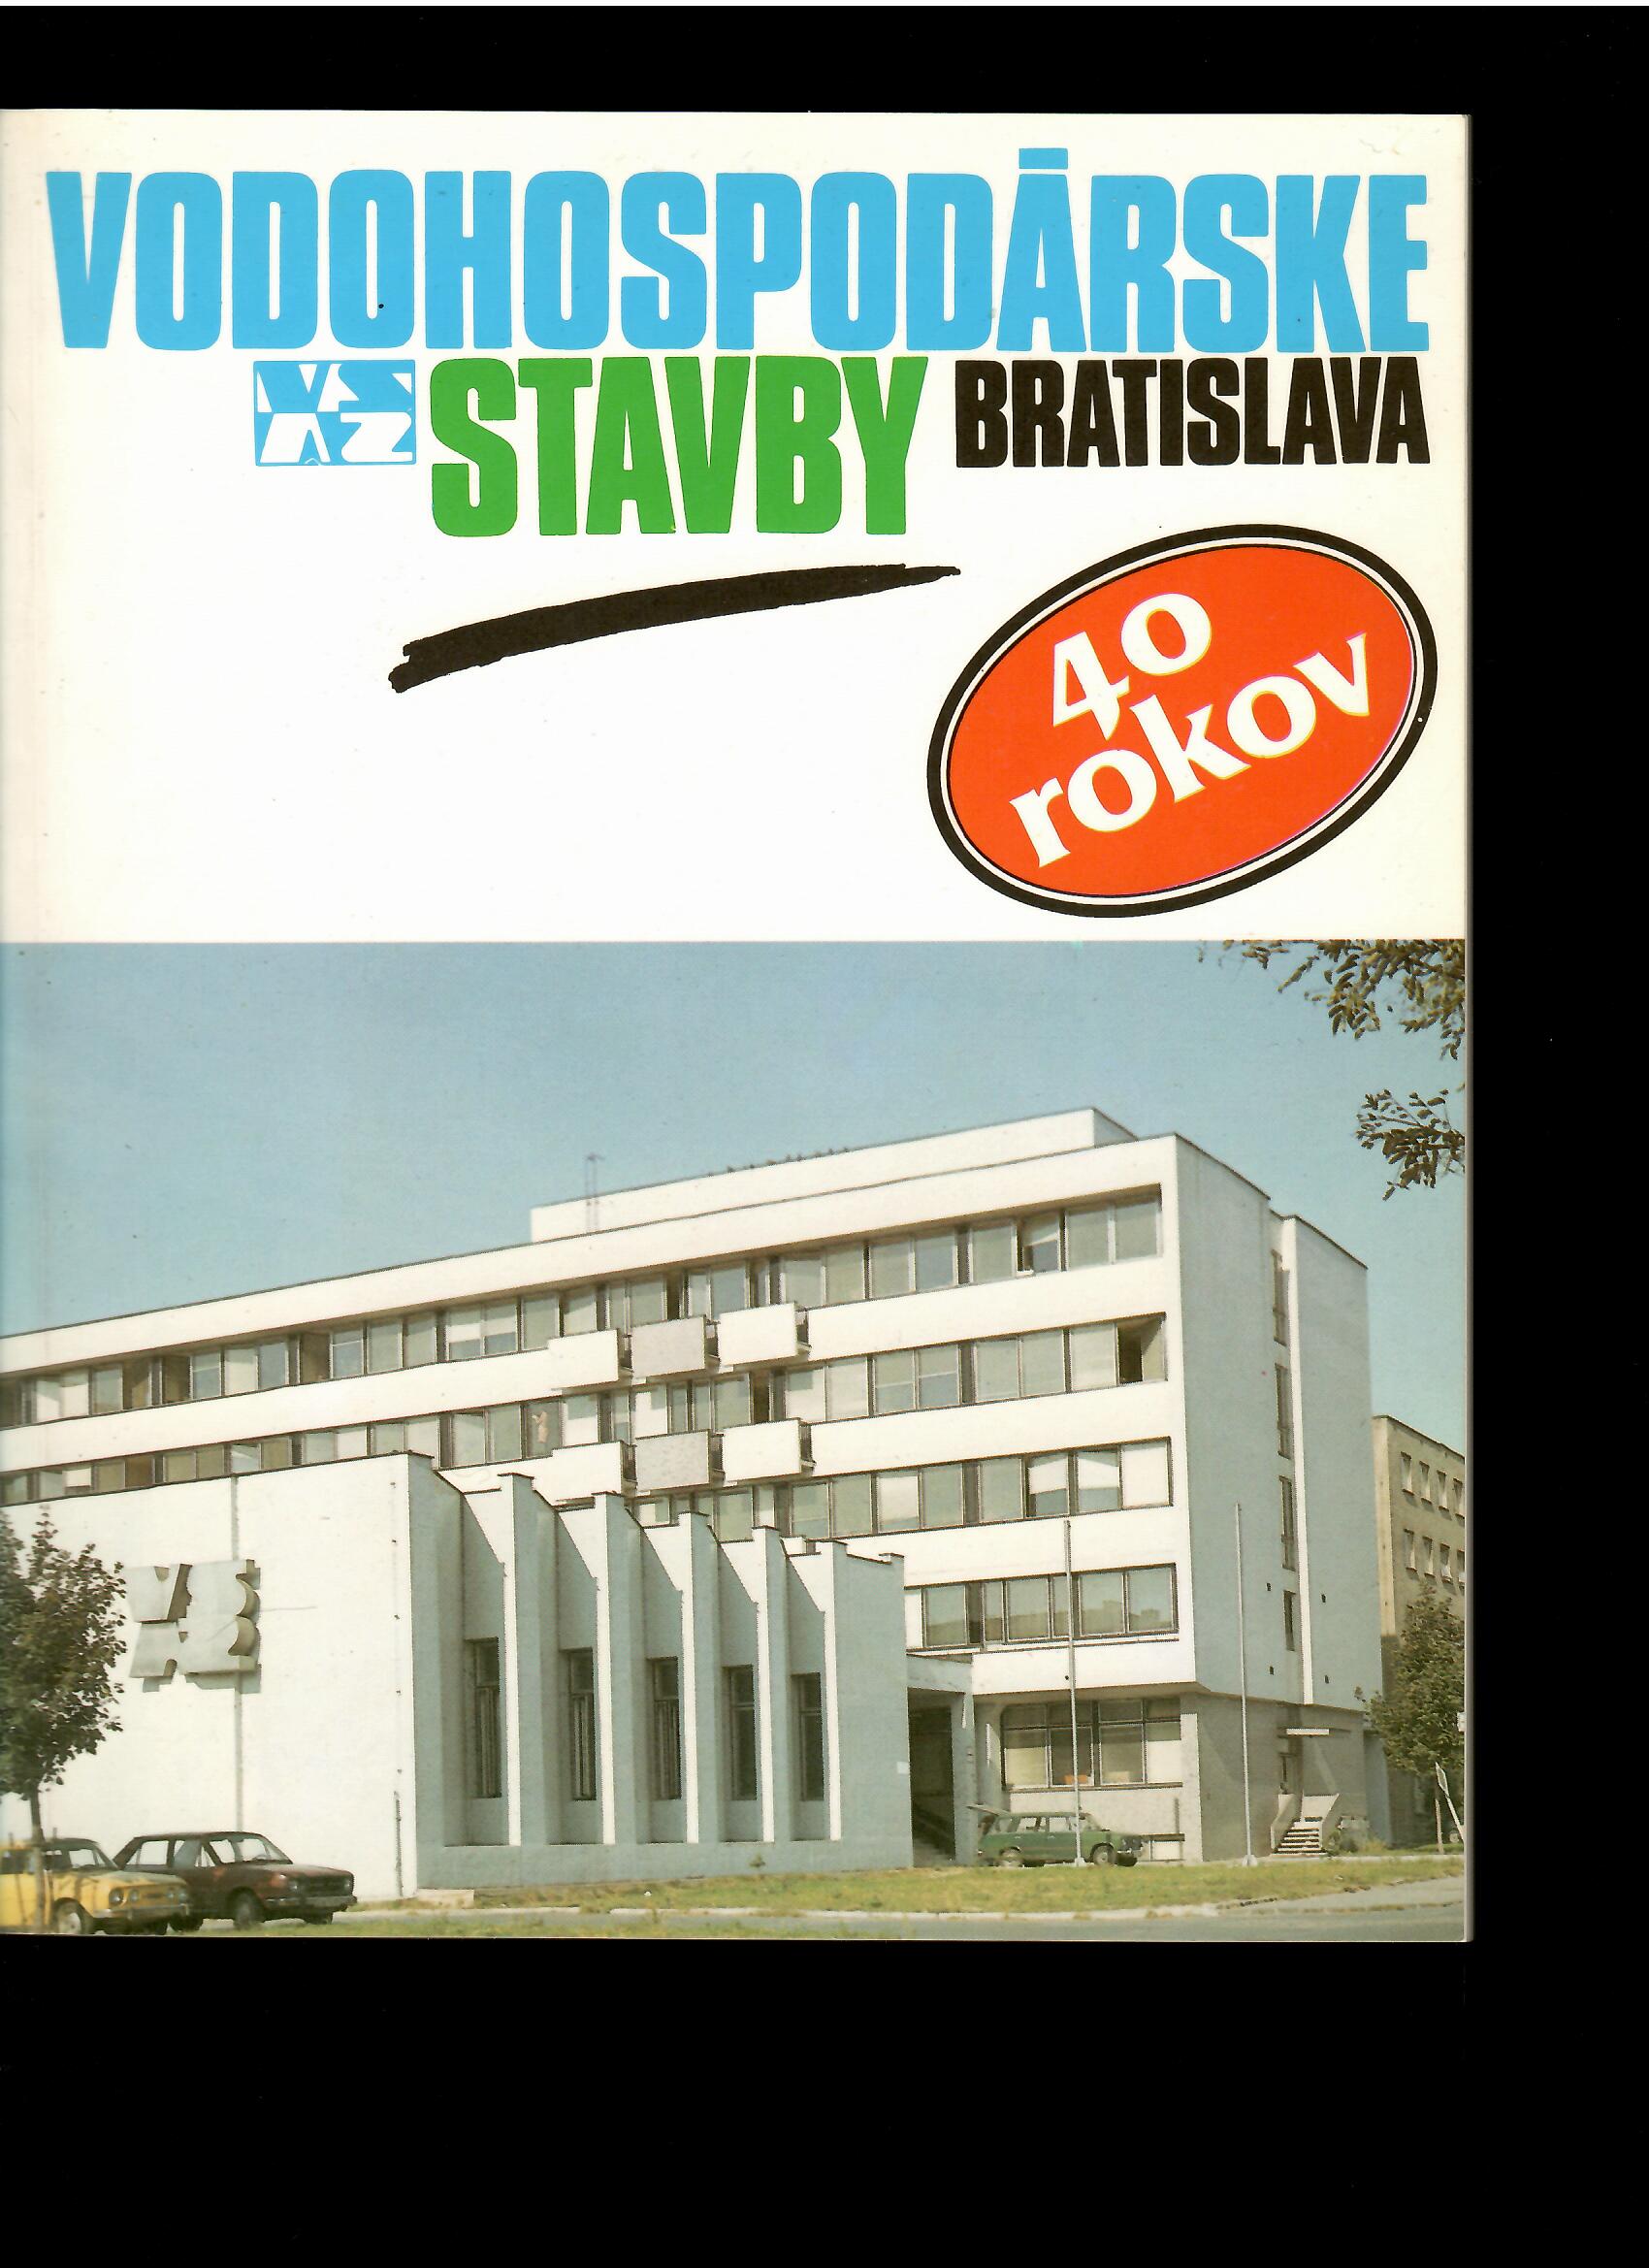 Peter Perďoch: Vodohospodárske stavby Bratislava 40 rokov /1951-1991/